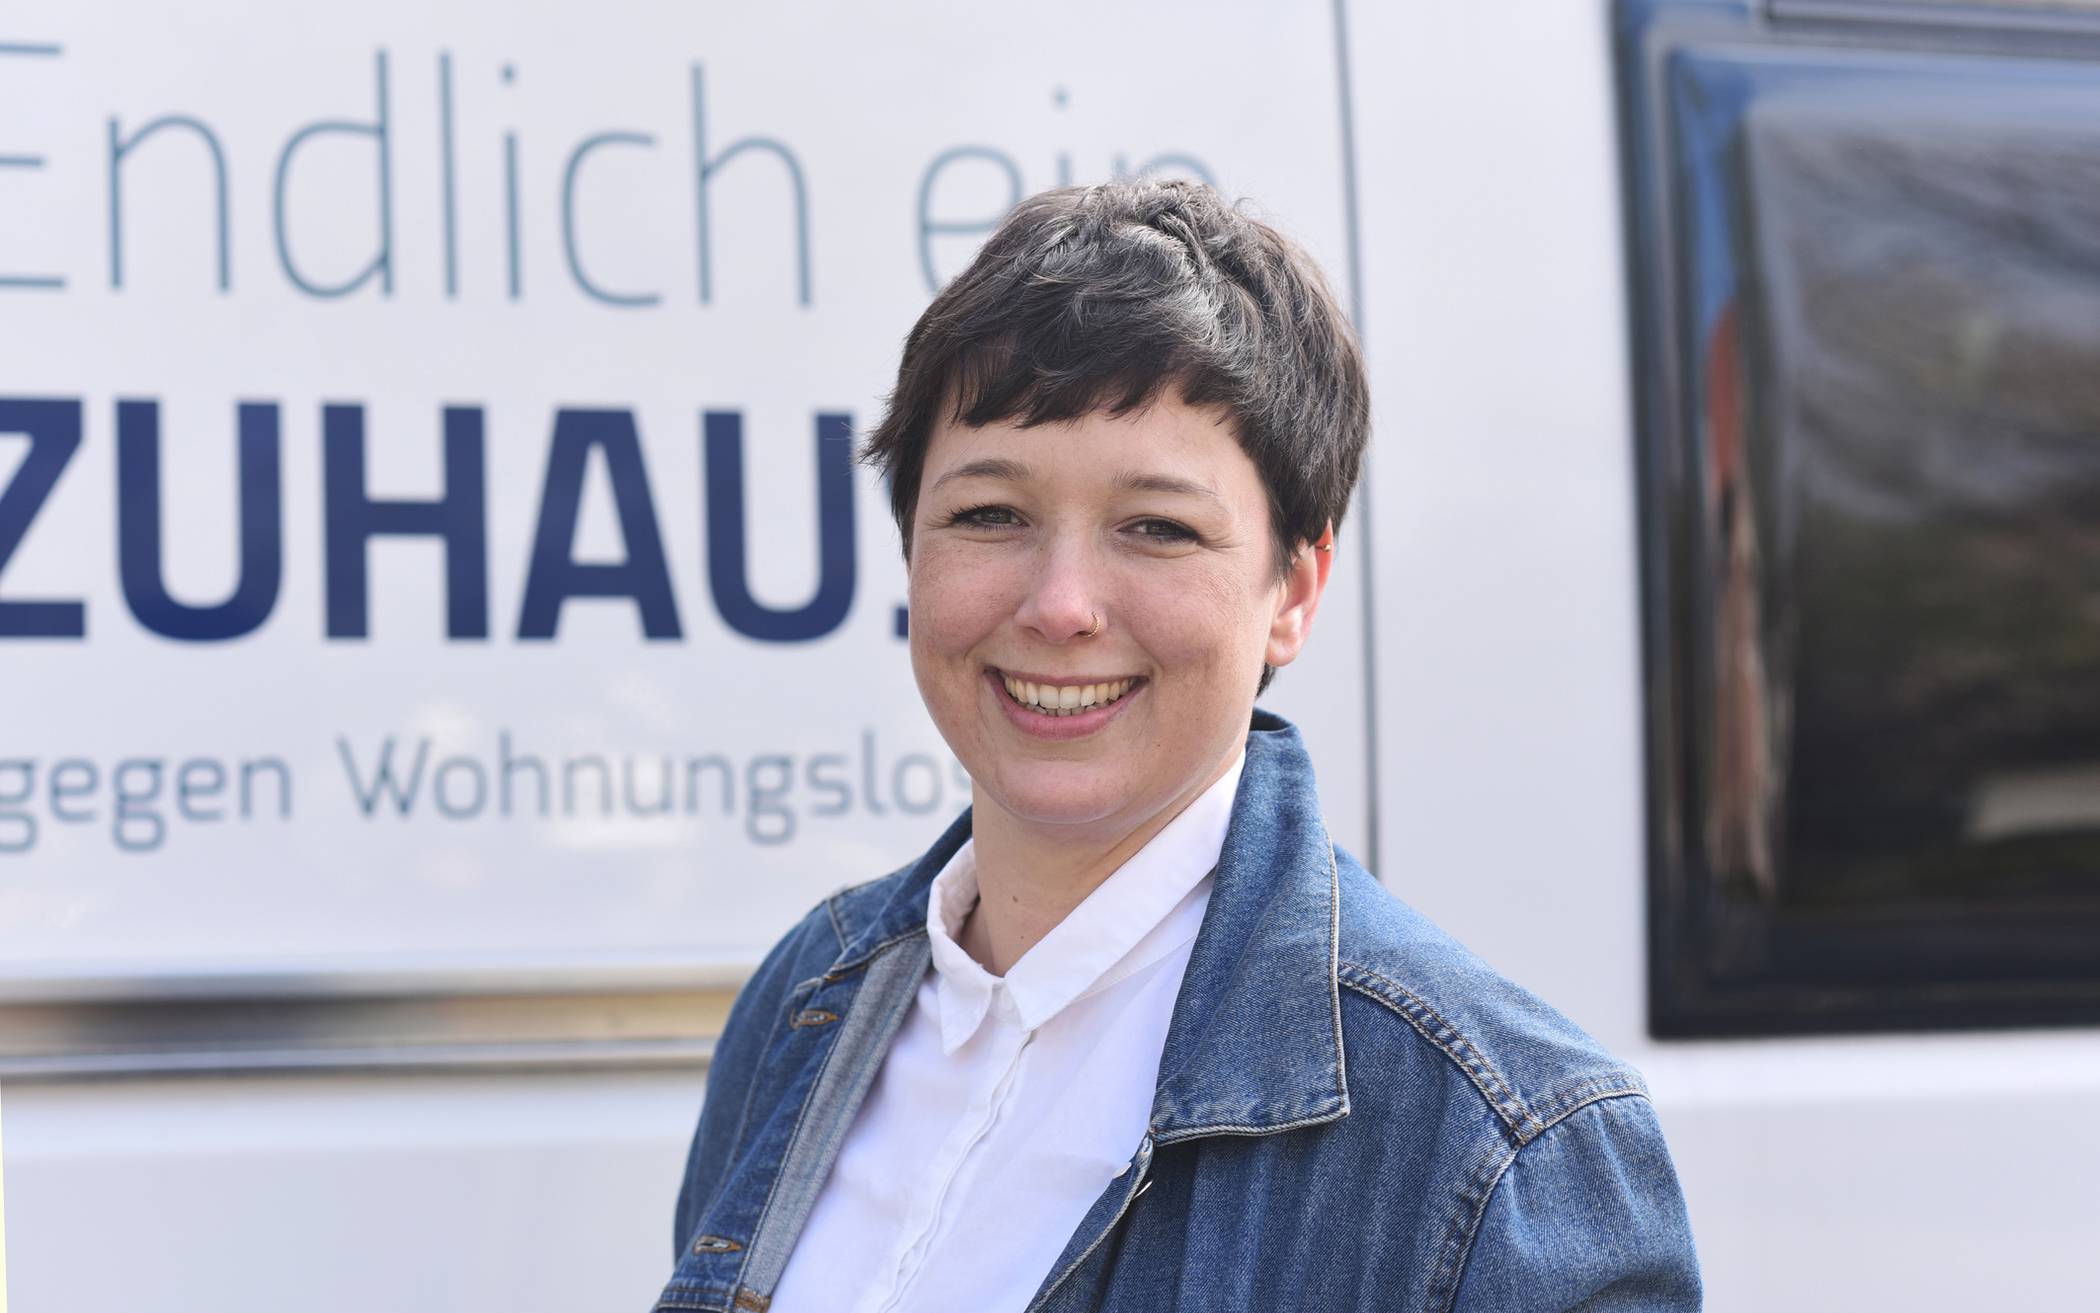 Kristina Teubler, kommissarische Fachbereichsleitung der Wohnungslosenhilfe